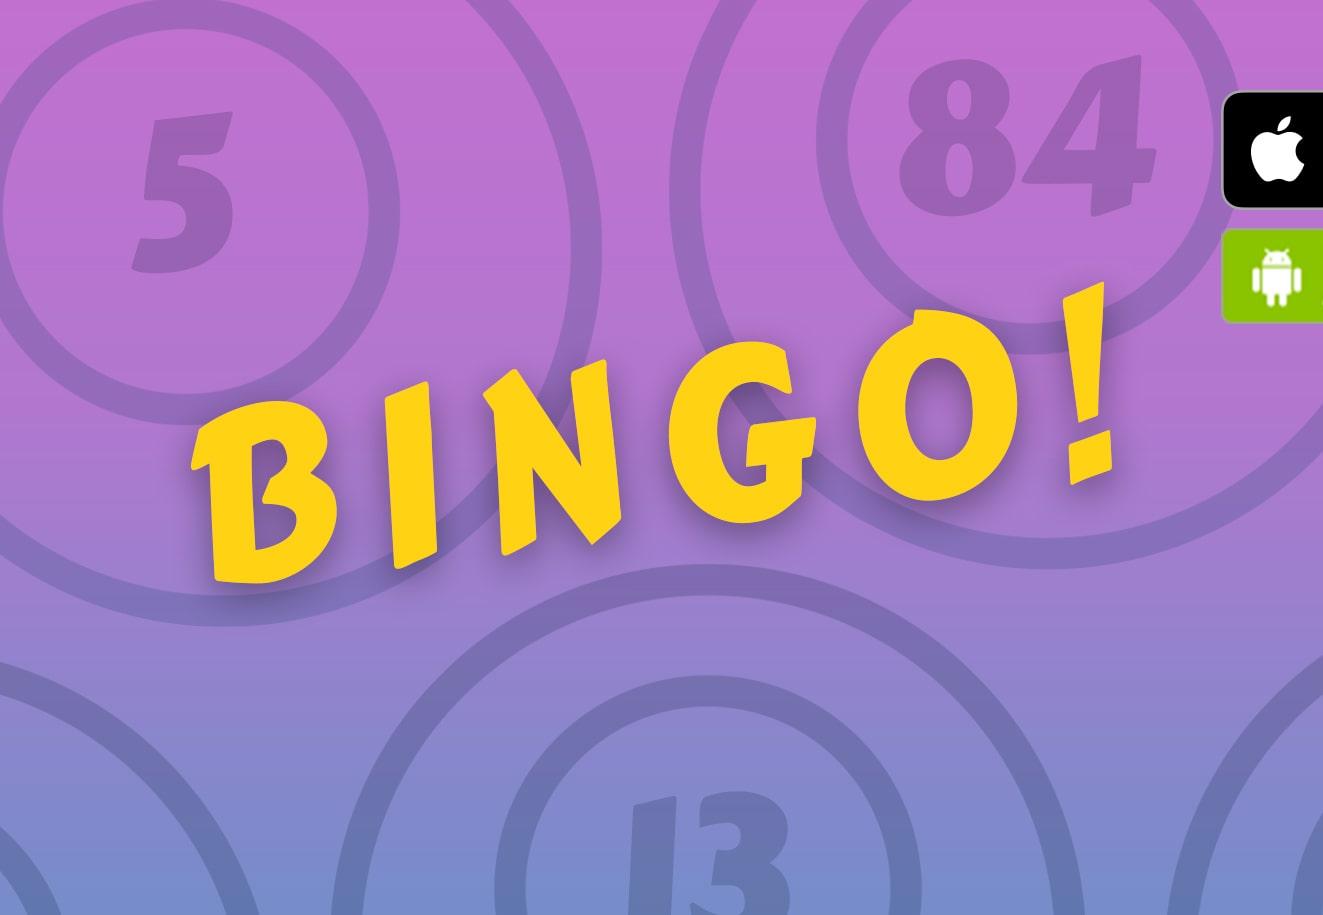 eurobet bingo online